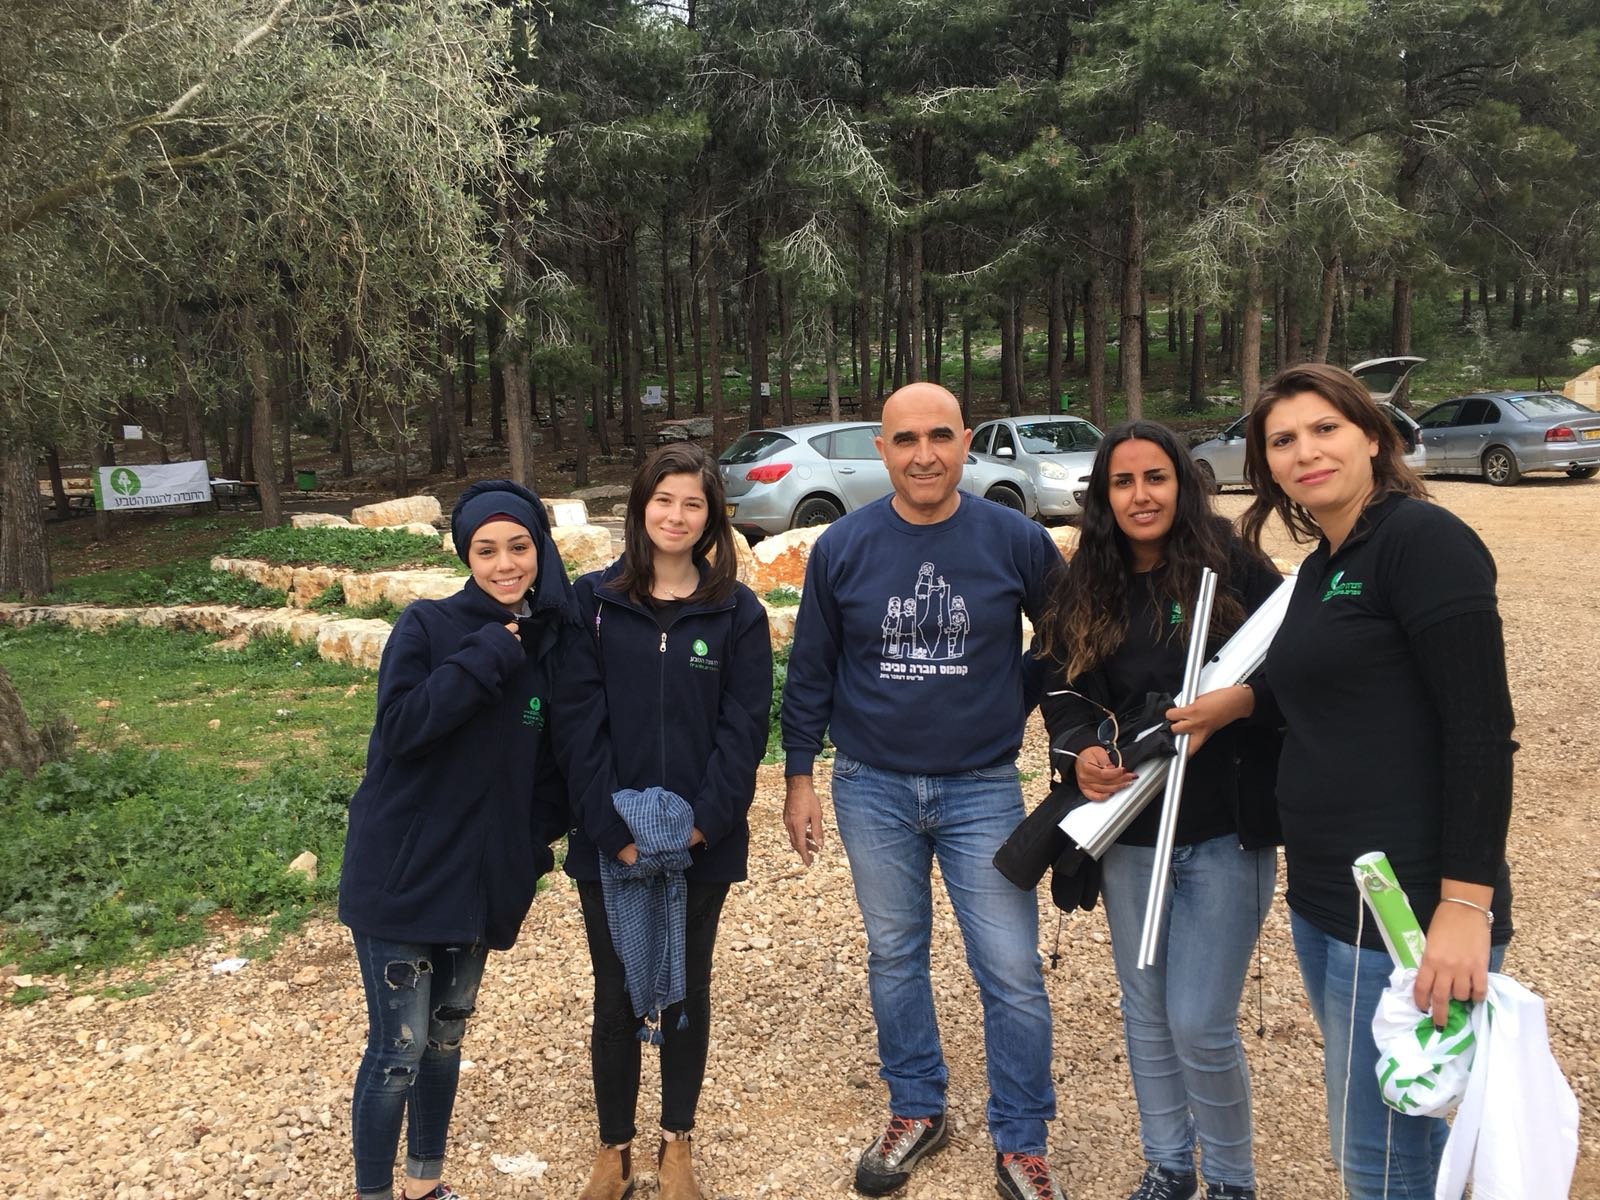 الابتدائيّة جولس "ب" تحتفل مع جمعيّة حماية الطّبيعة بعيد غرس الأشجار في حرش أحيهود-15